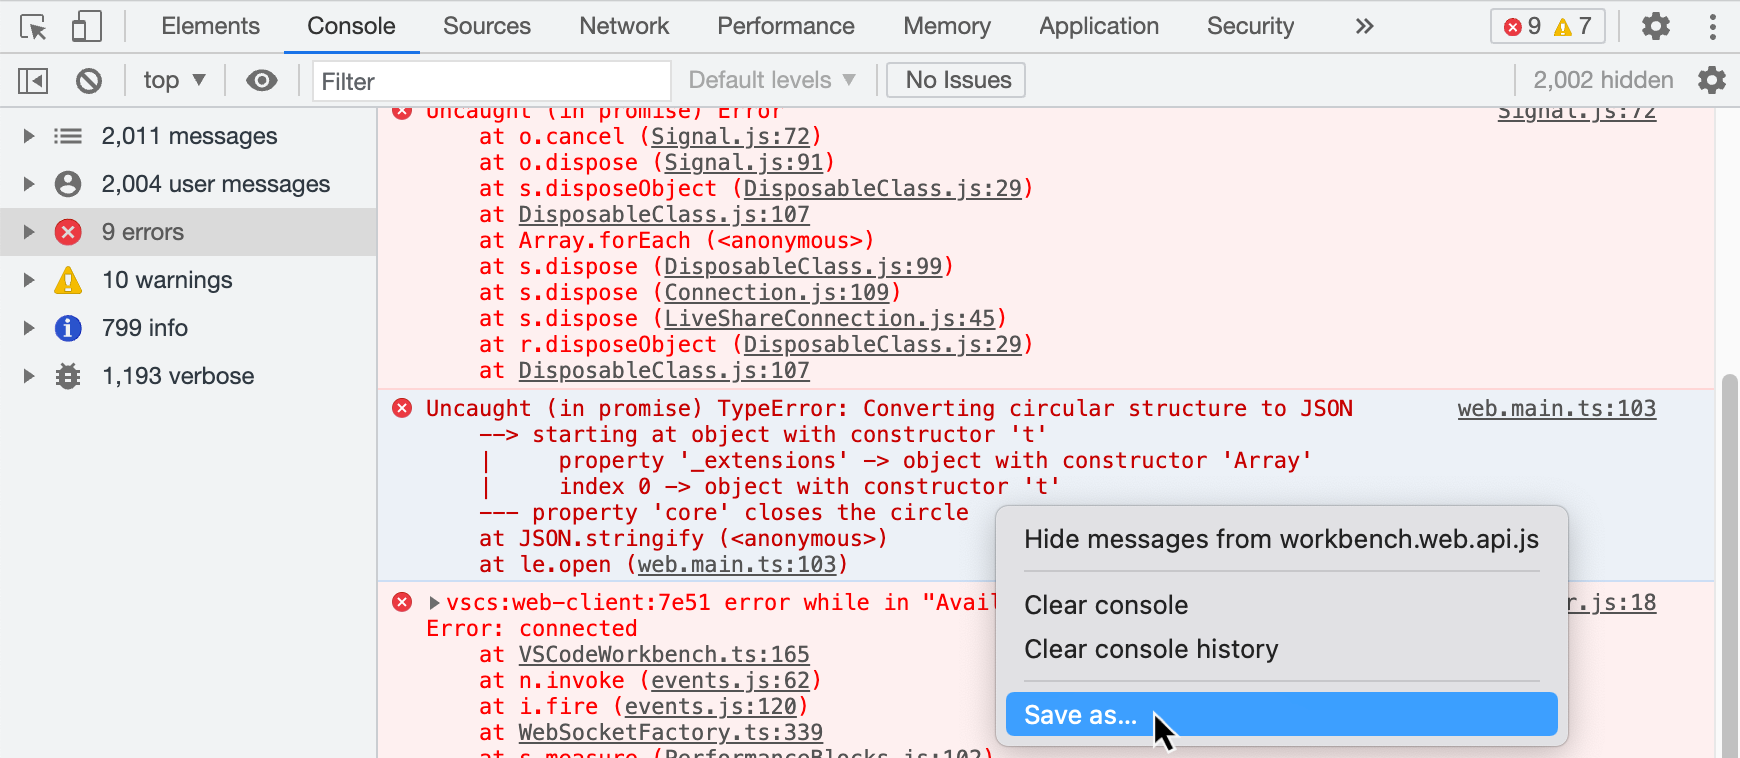 Снимок экрана: панель средств разработчика в браузере Chrome. Появится контекстное меню с параметром "Сохранить как".